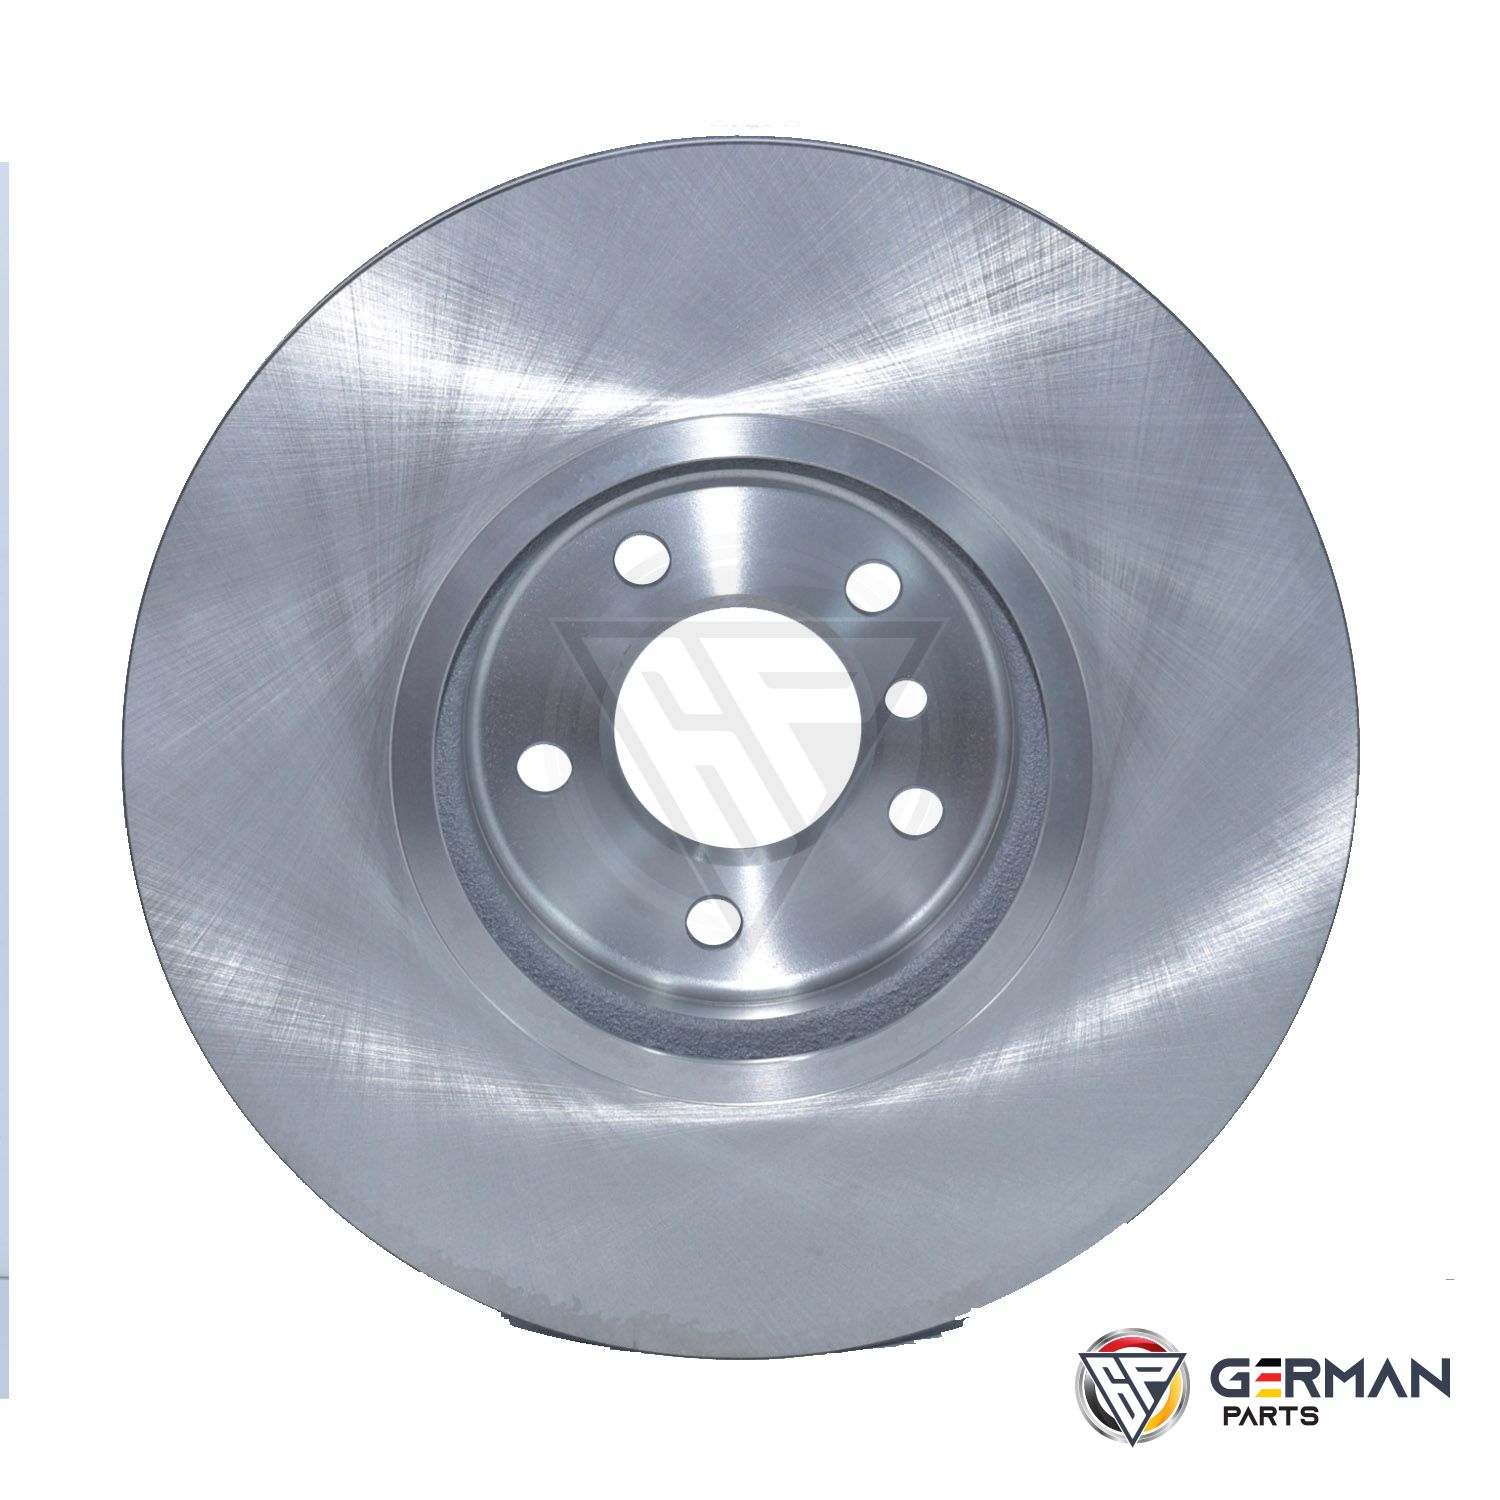 Buy TRW Front Brake Disc 34116793243 - German Parts